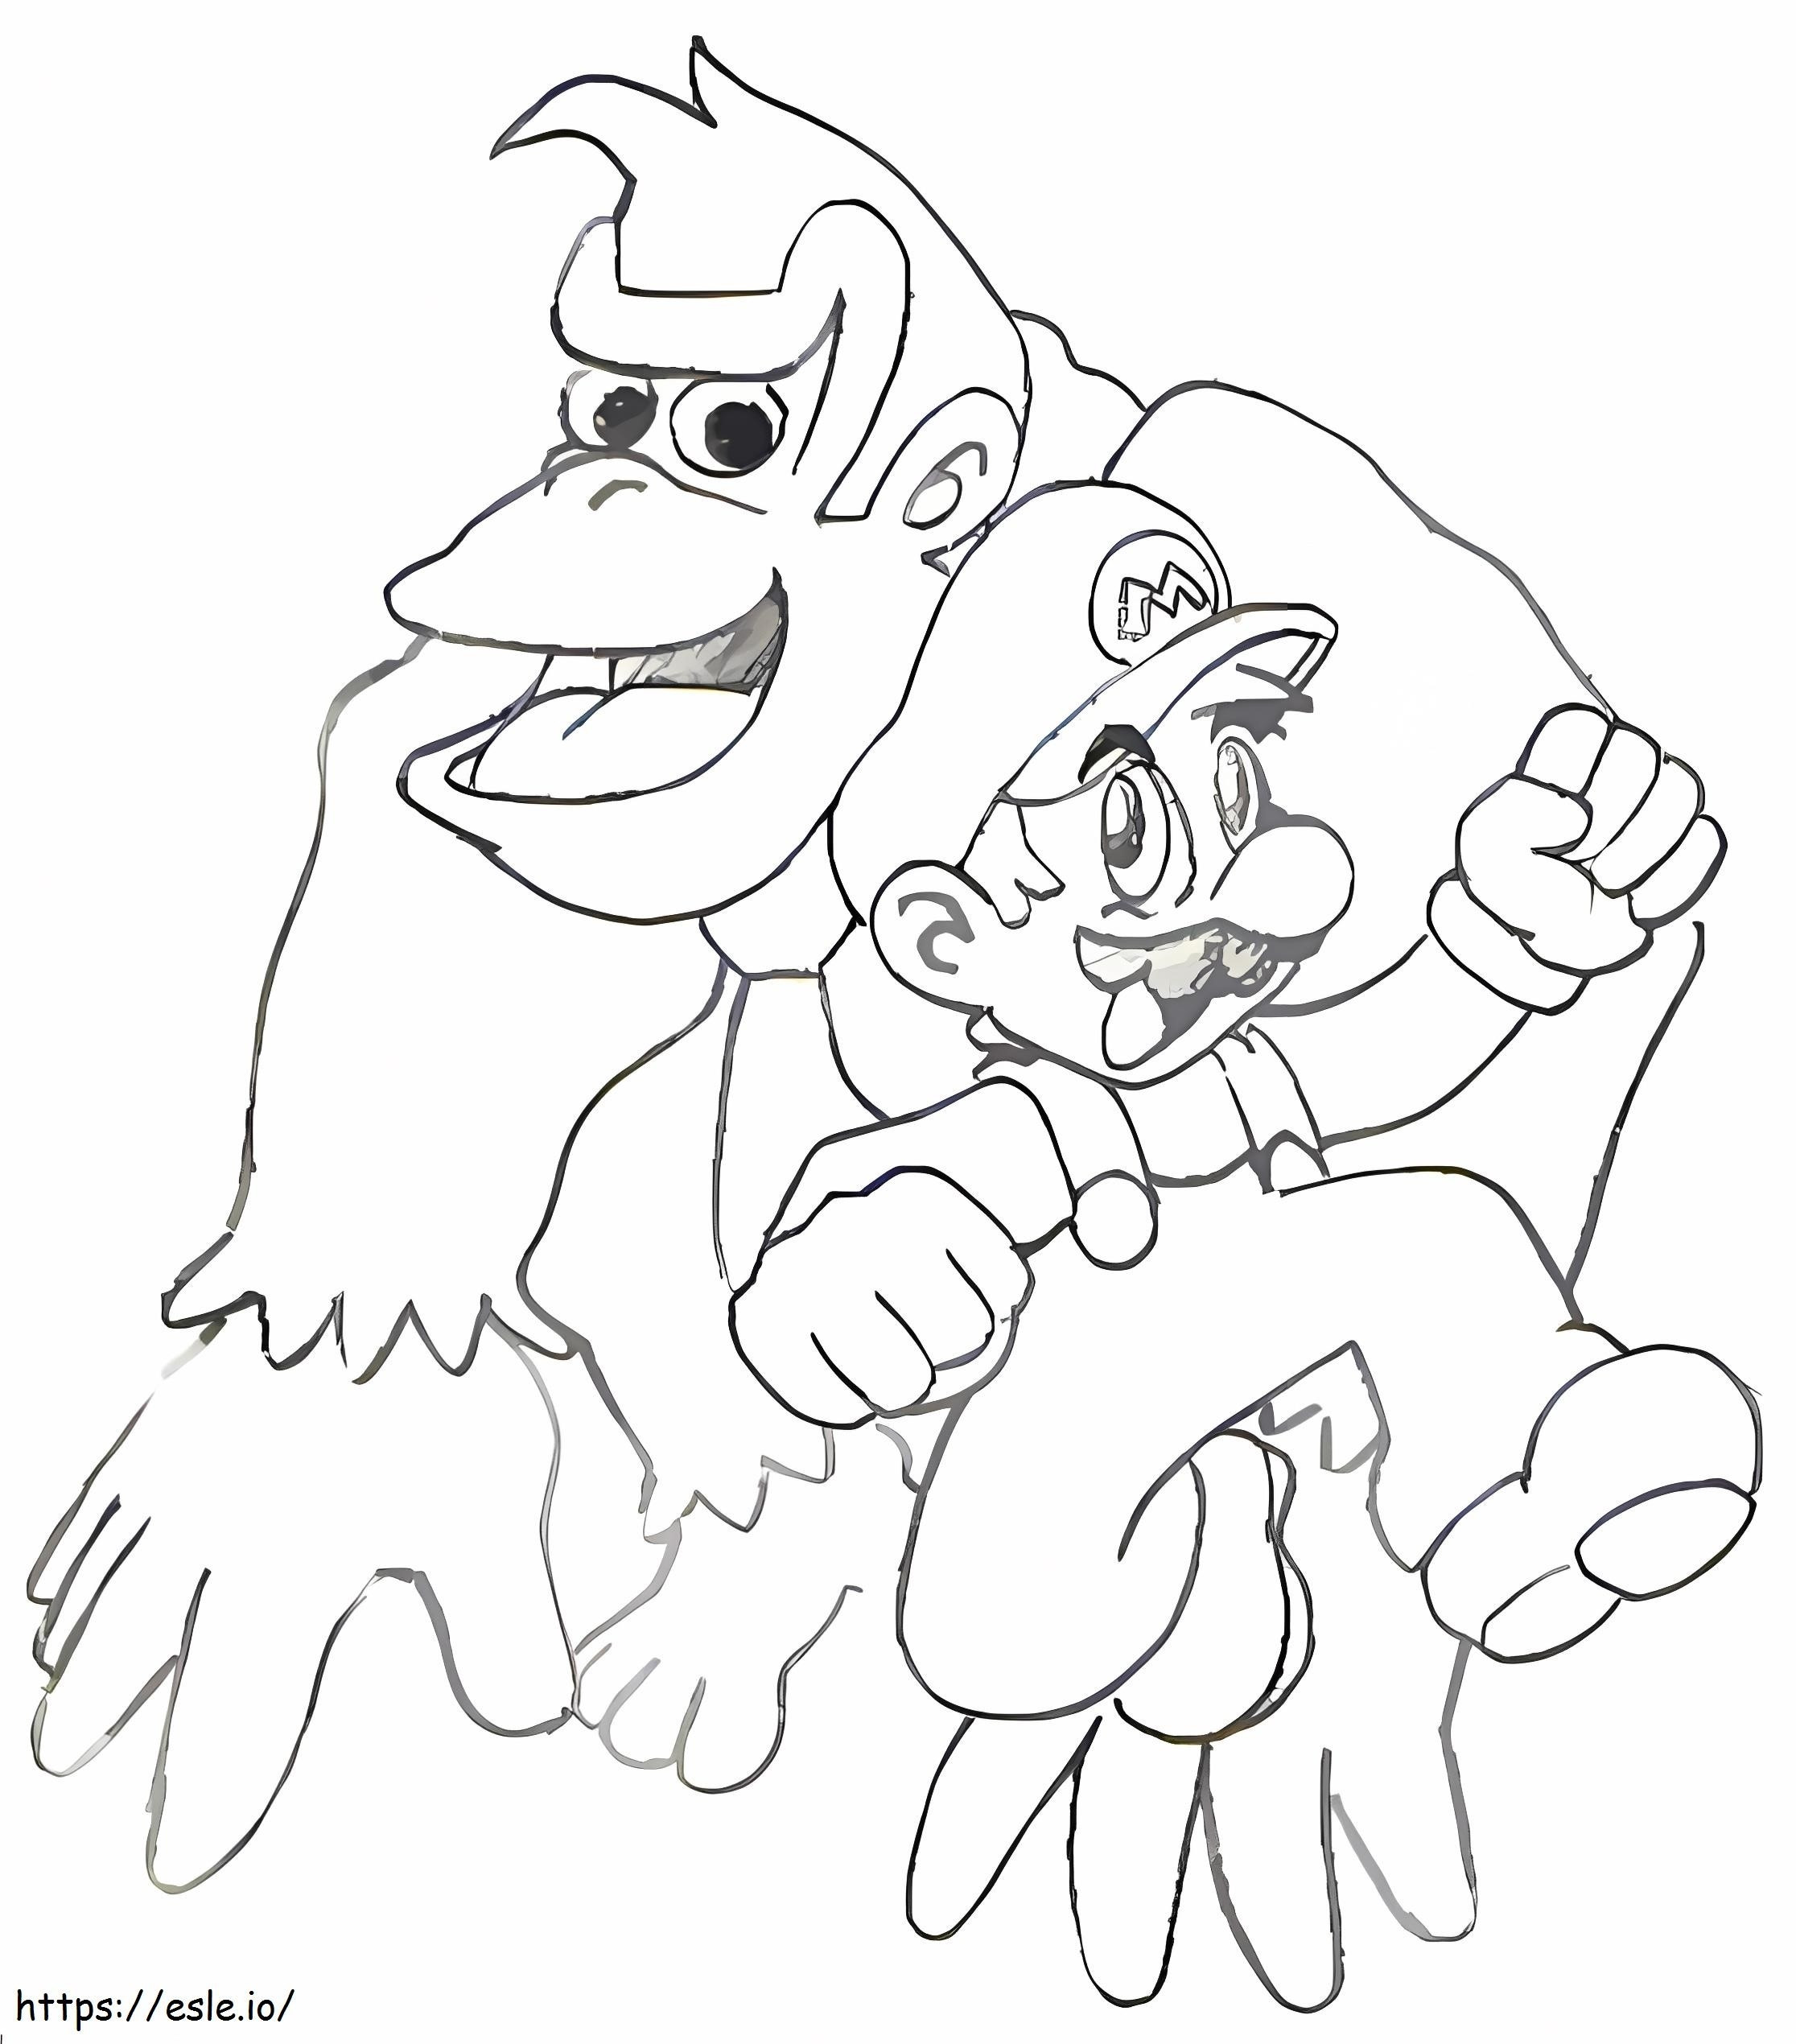 Coloriage Mario et Donkey Kong à imprimer dessin